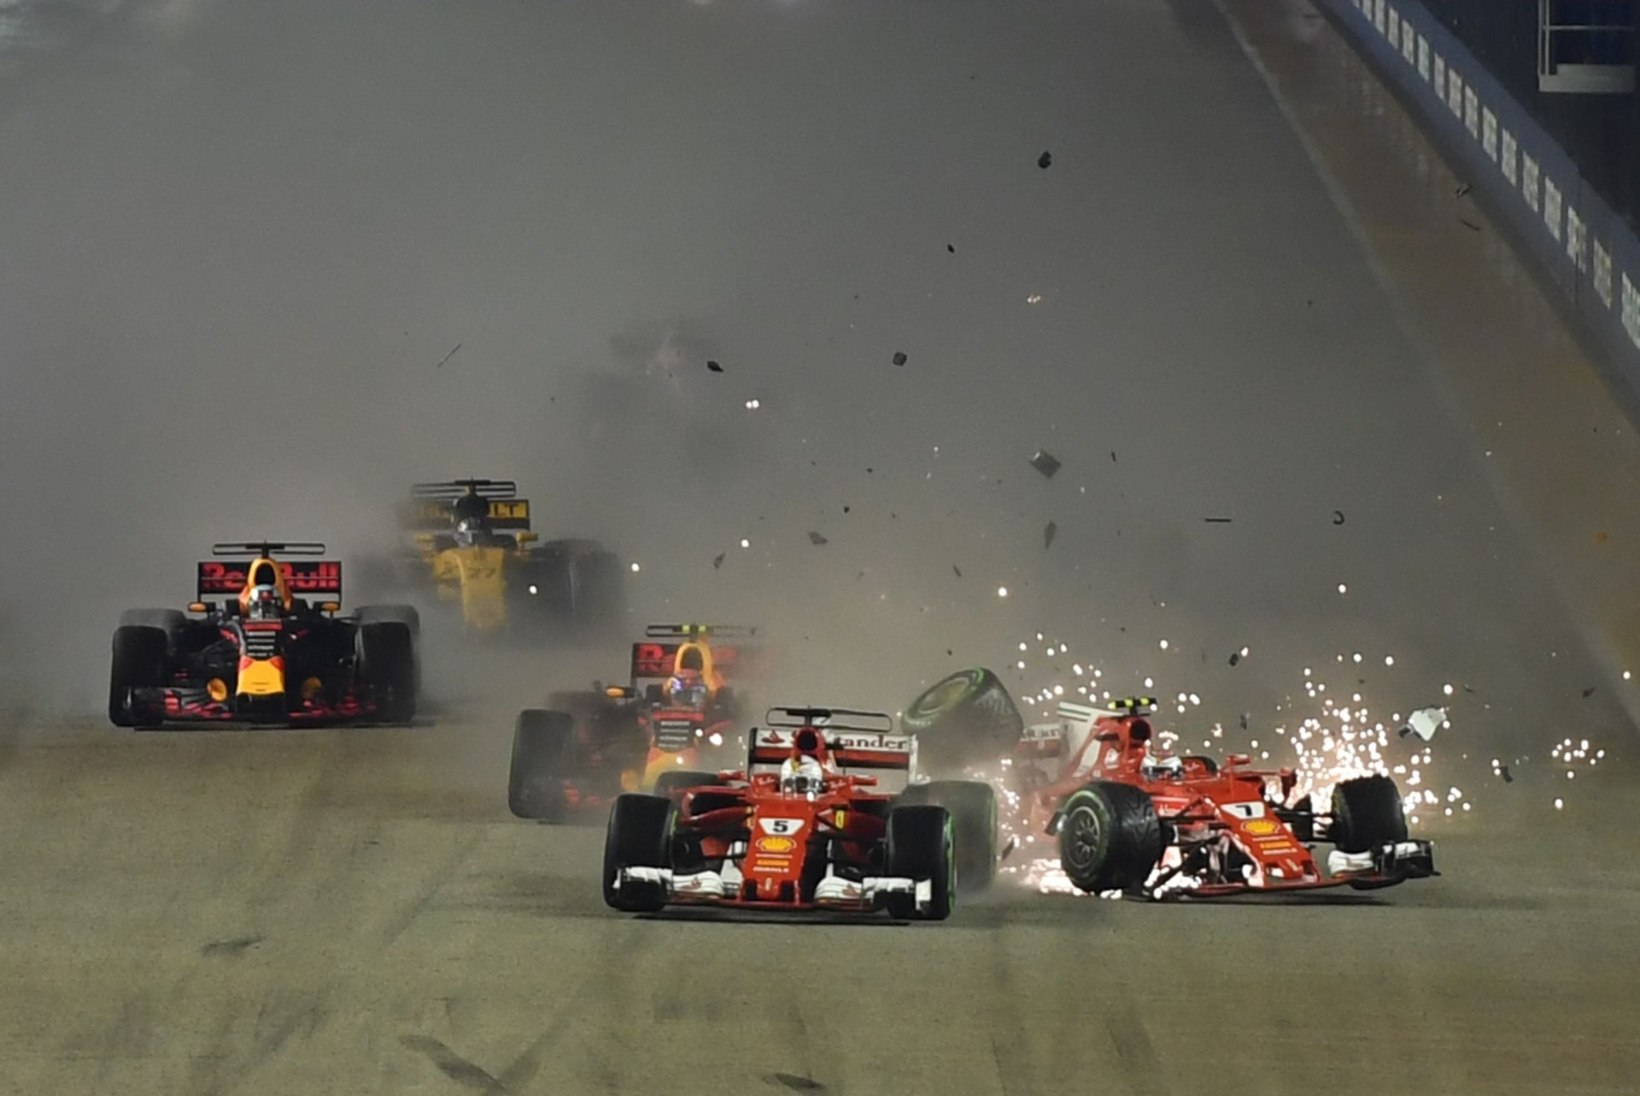 FOTOD JA VIDEO | Vetteli, Räikköneni ja Verstappeni uskumatu avarii Singapuri GP stardis